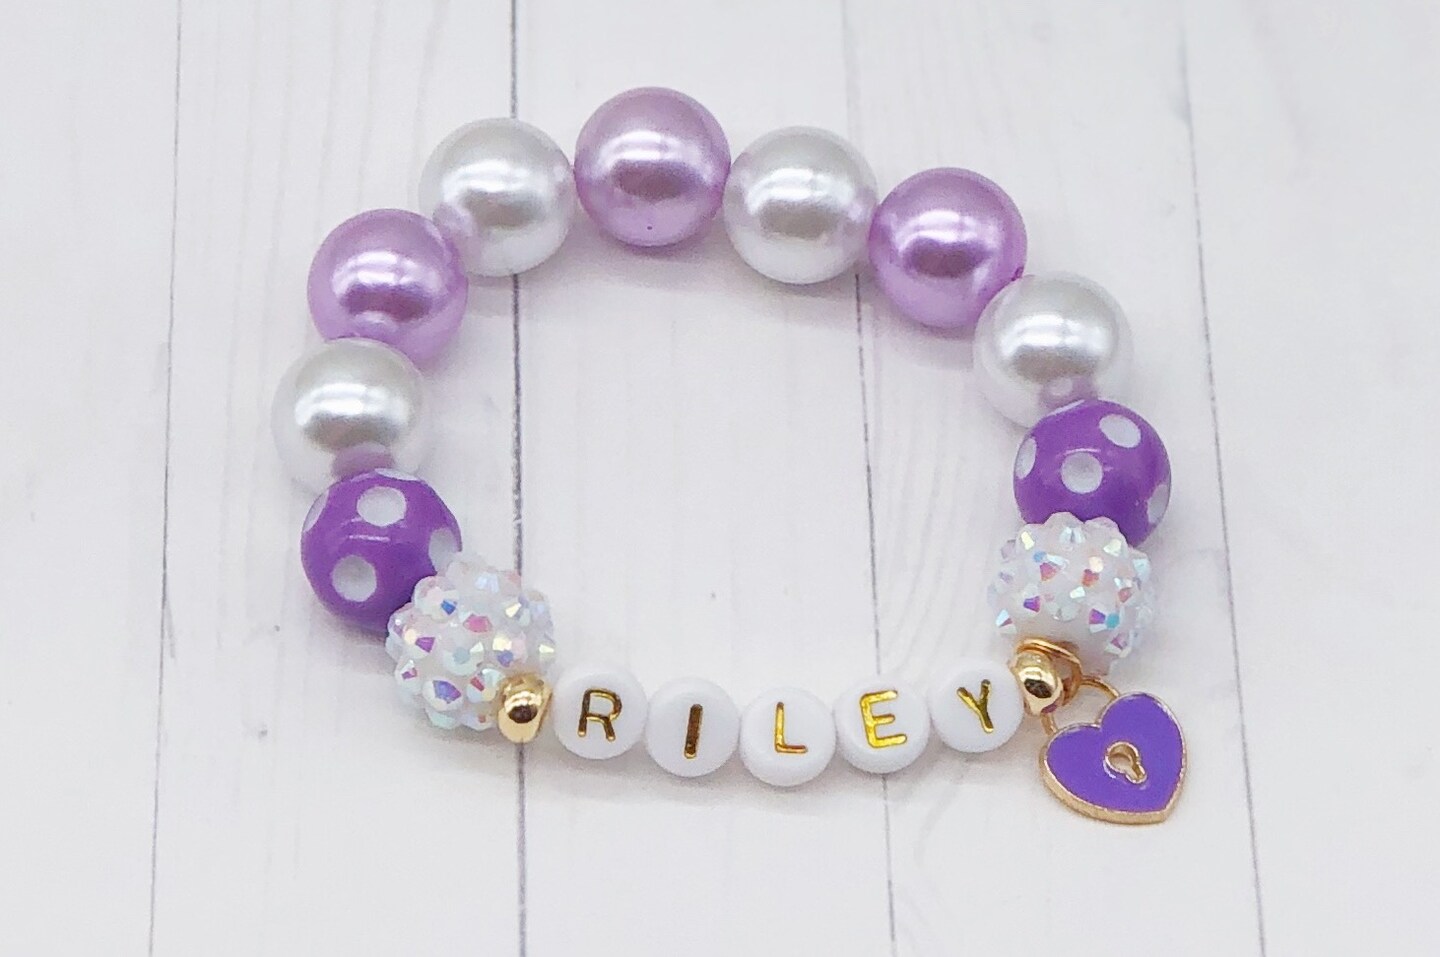 Little Girl bracelets